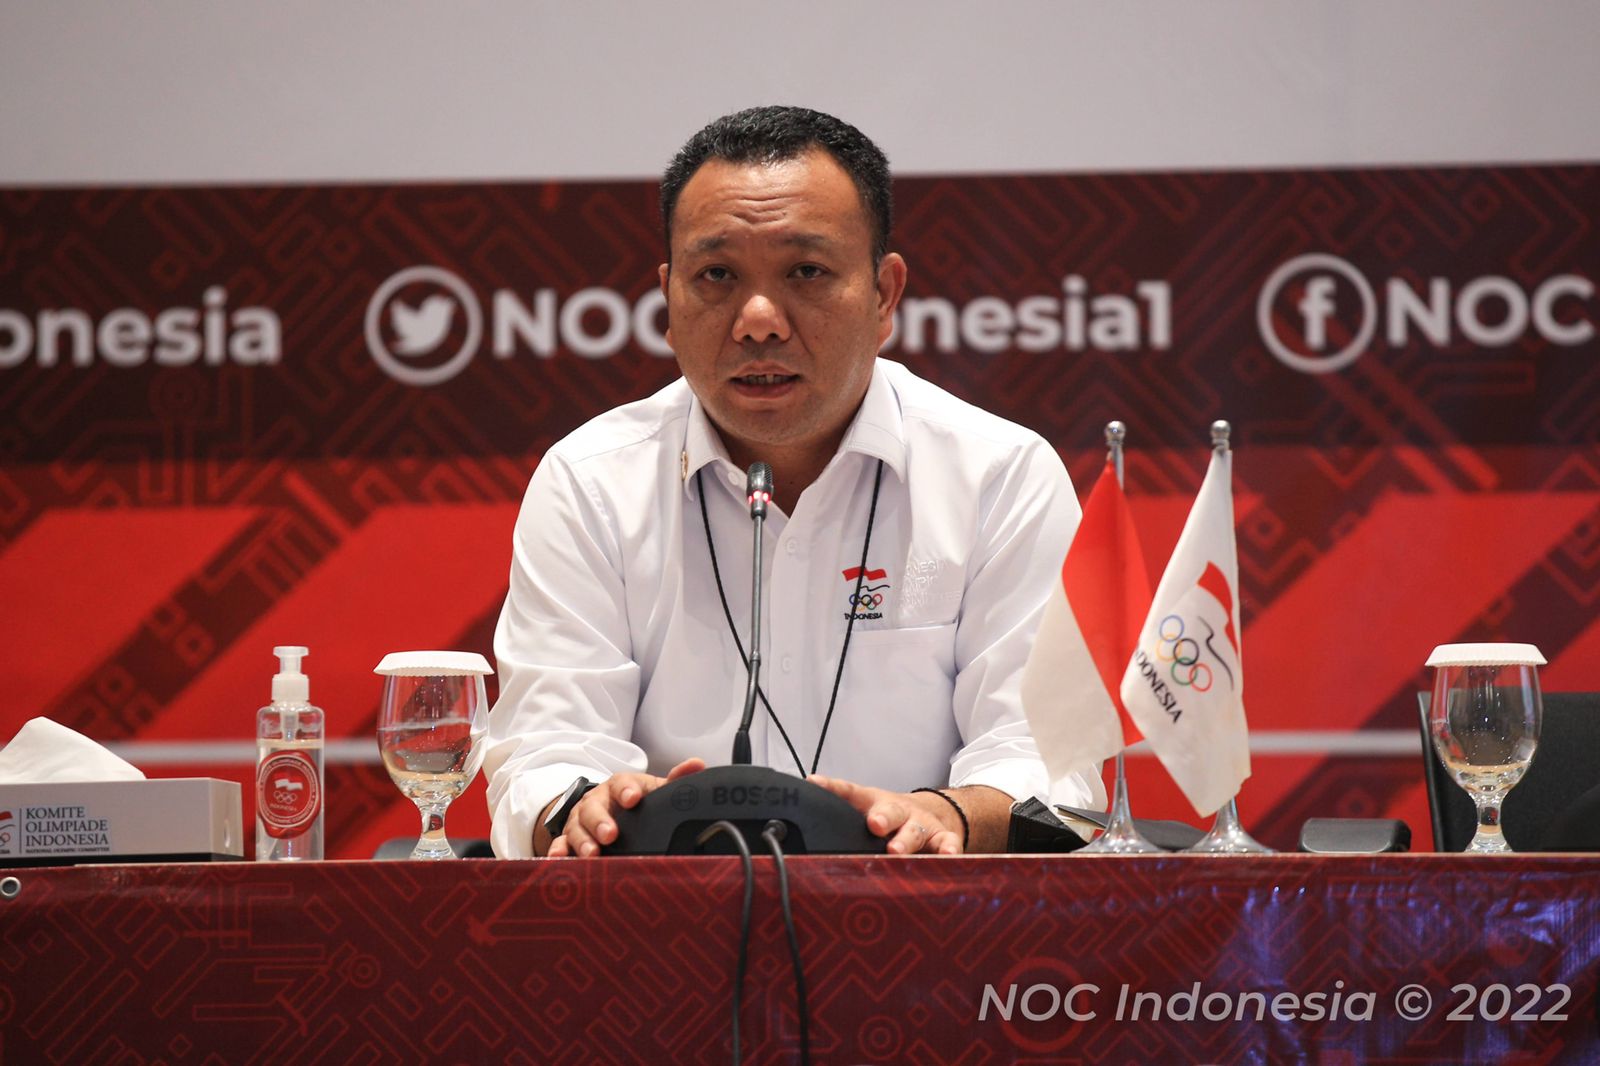 Alasan Menpora Tunjuk Sekjen NOC Indonesia sebagai CdM di SEA Games 2021